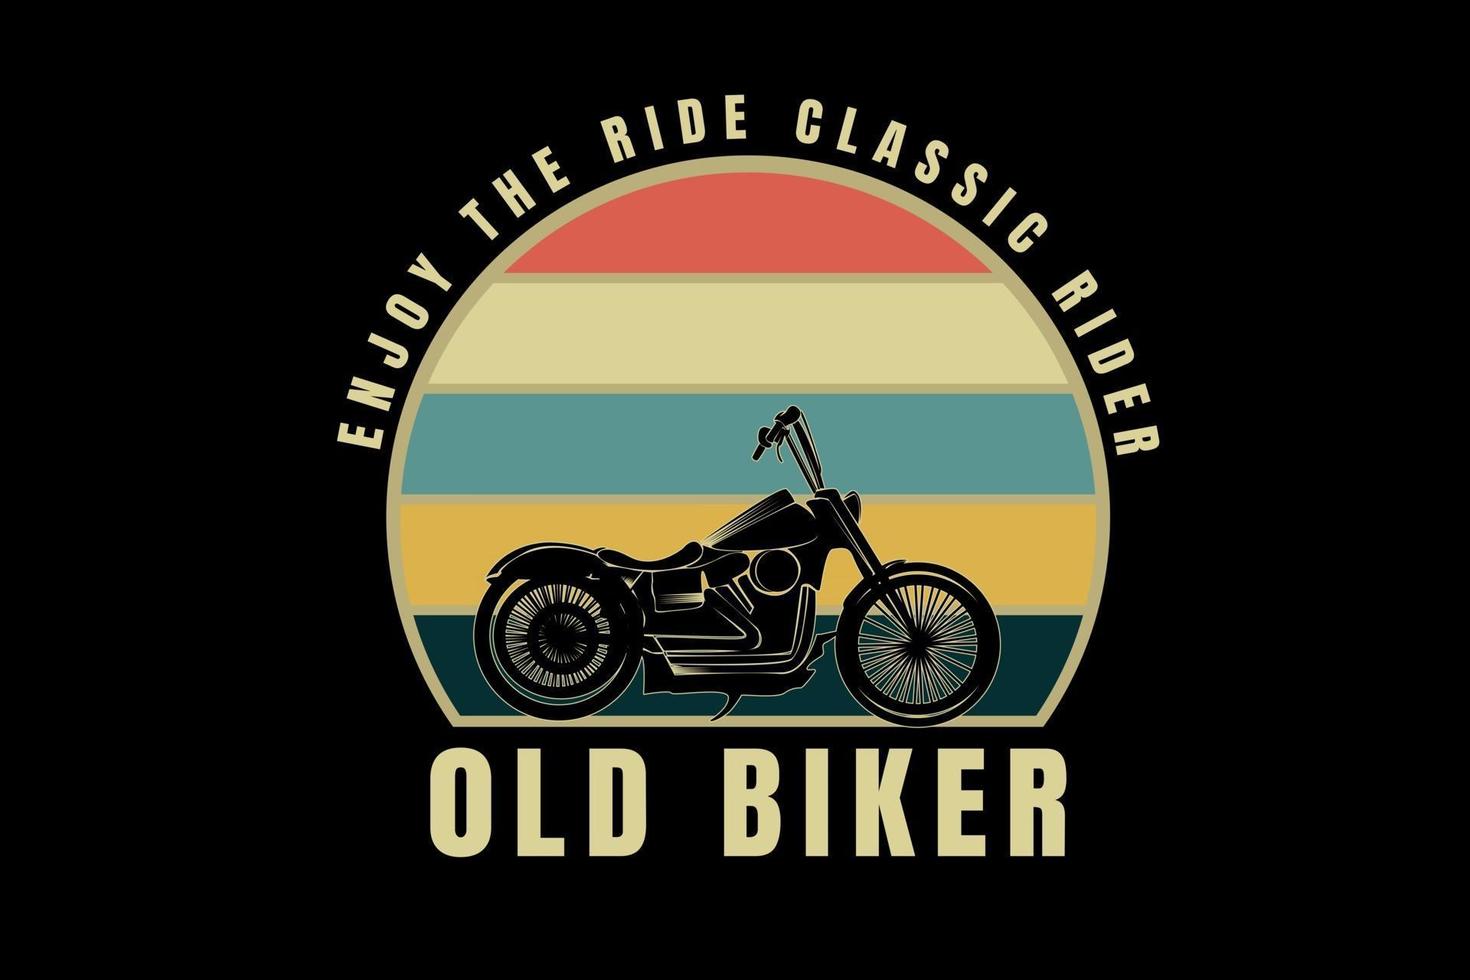 Harley profitez de la balade classic rider vieux motard couleur orange crème et vert vecteur